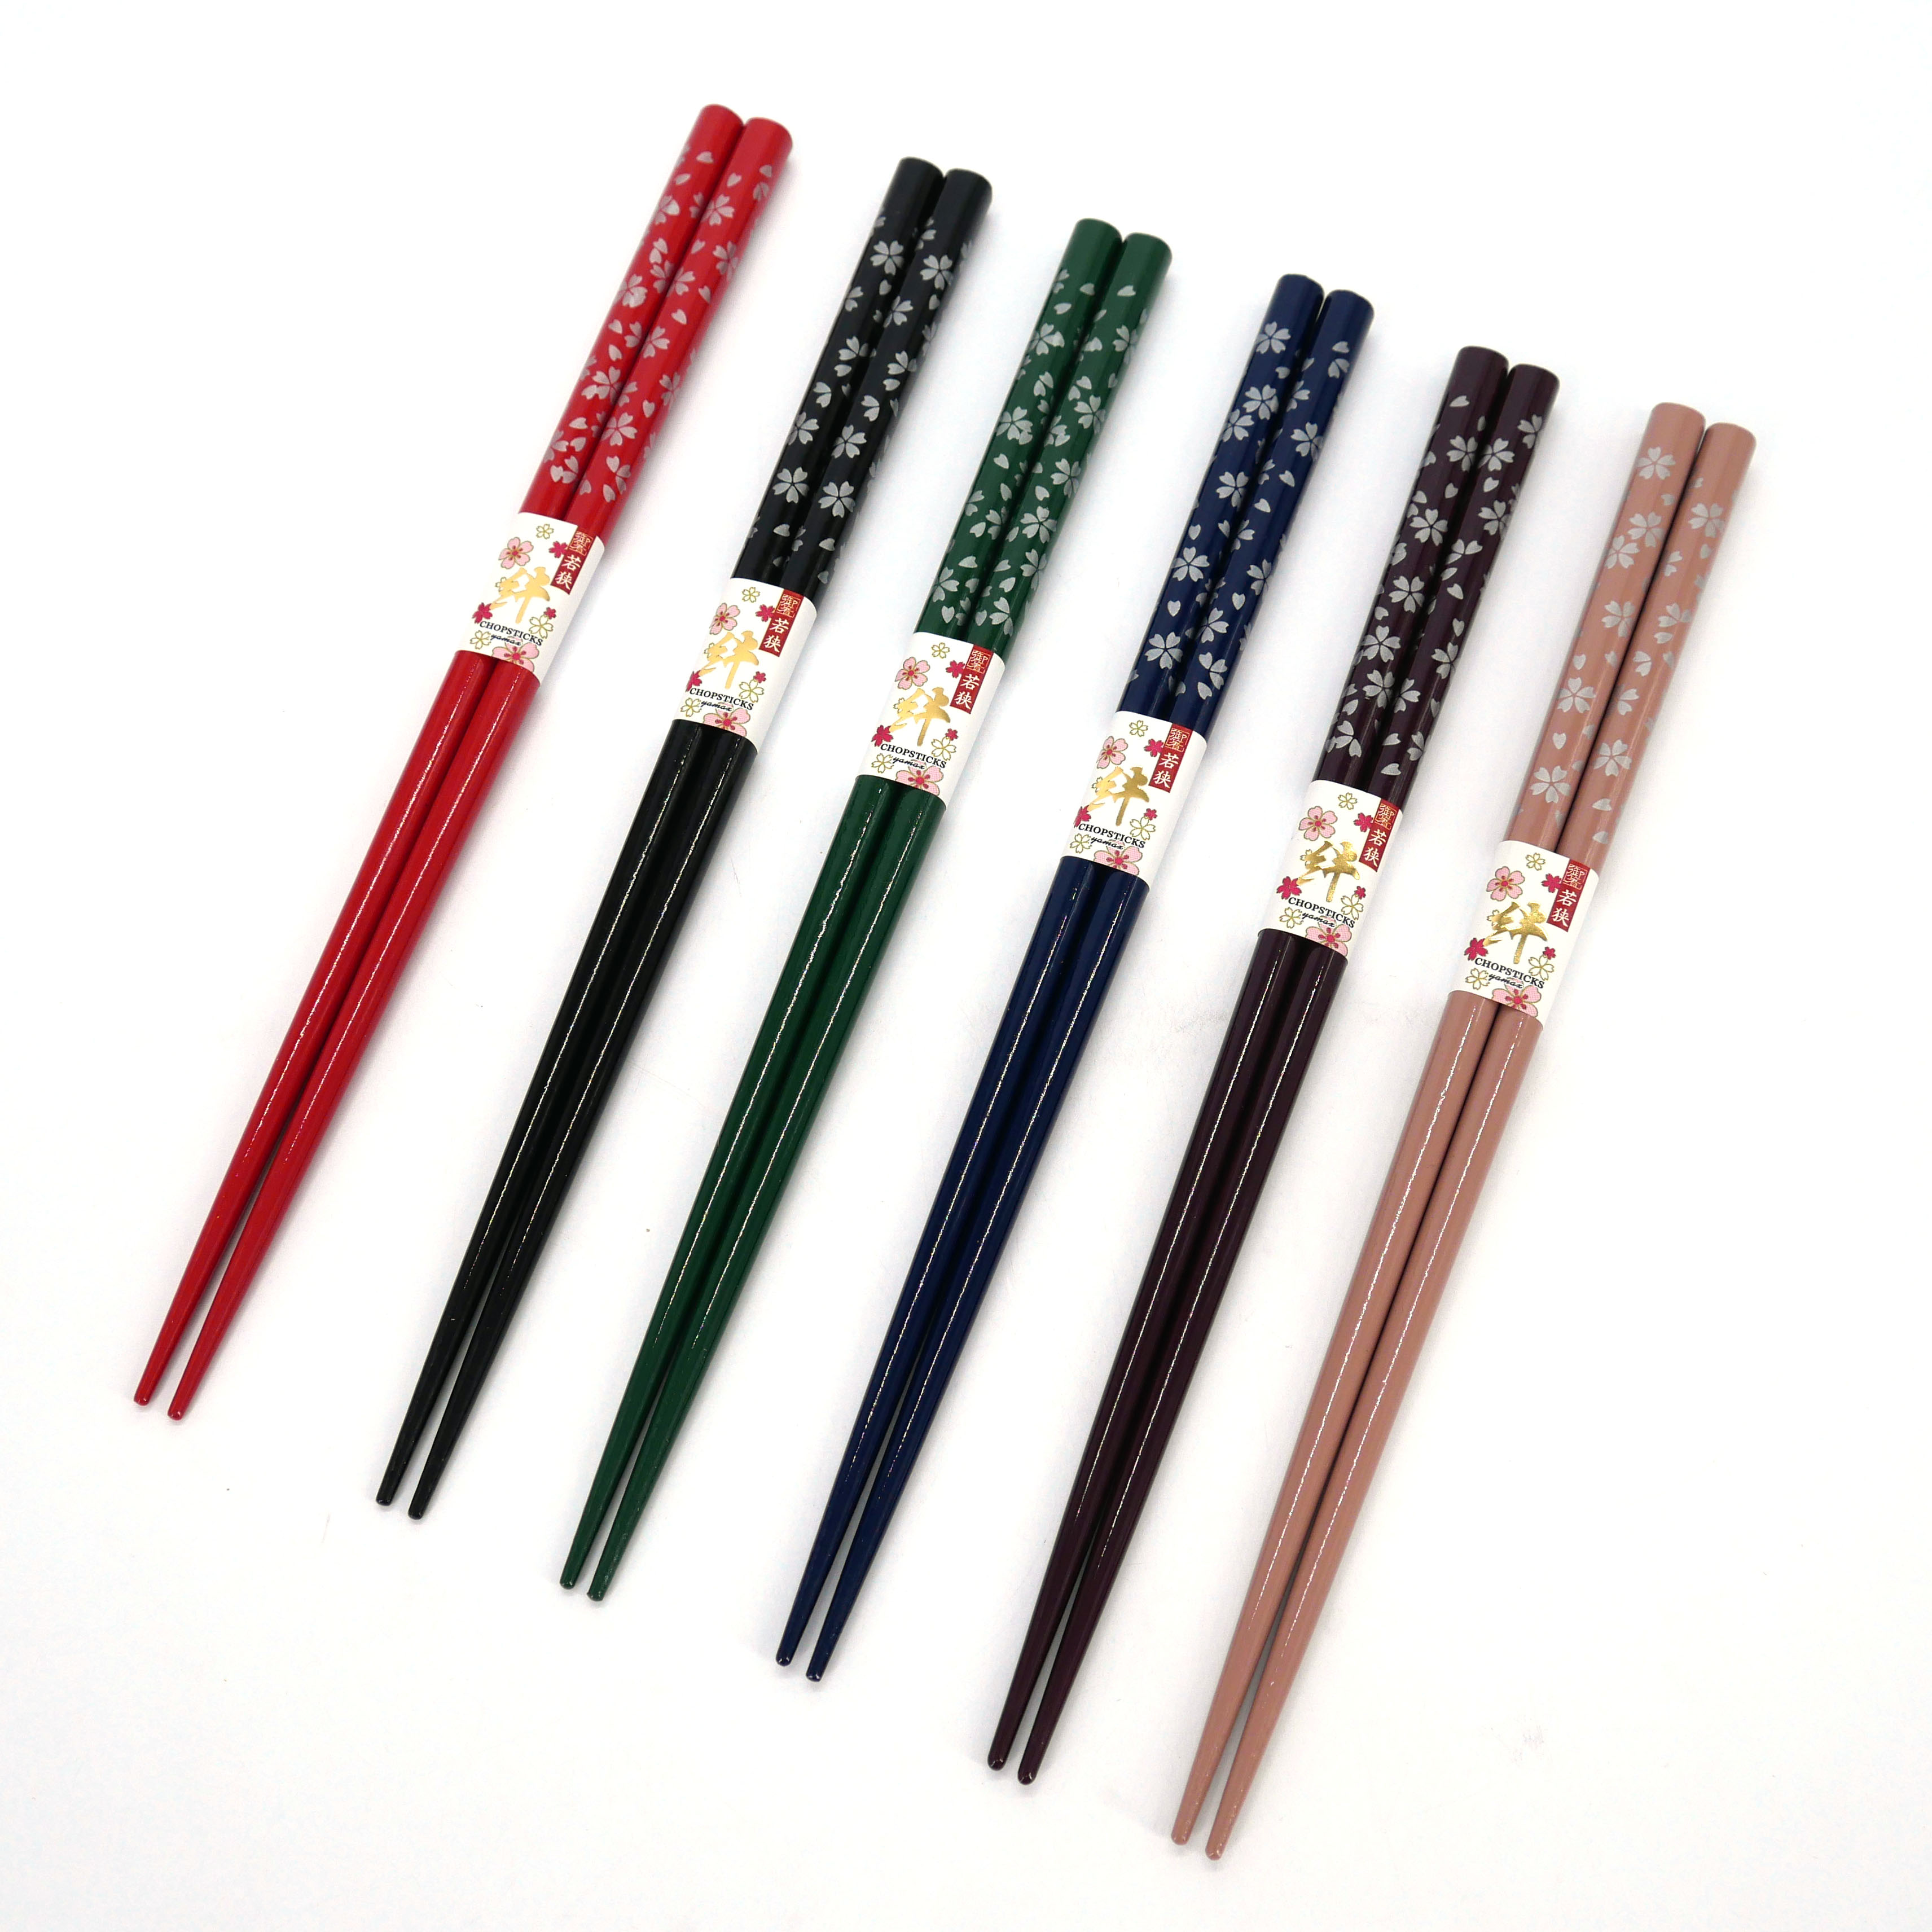 https://kyotoboutique.fr/37283/coppia-di-bacchette-giapponesi-ai-fiori-di-ciliegio-sakura-hana-colore-a-scelta-23-cm.jpg